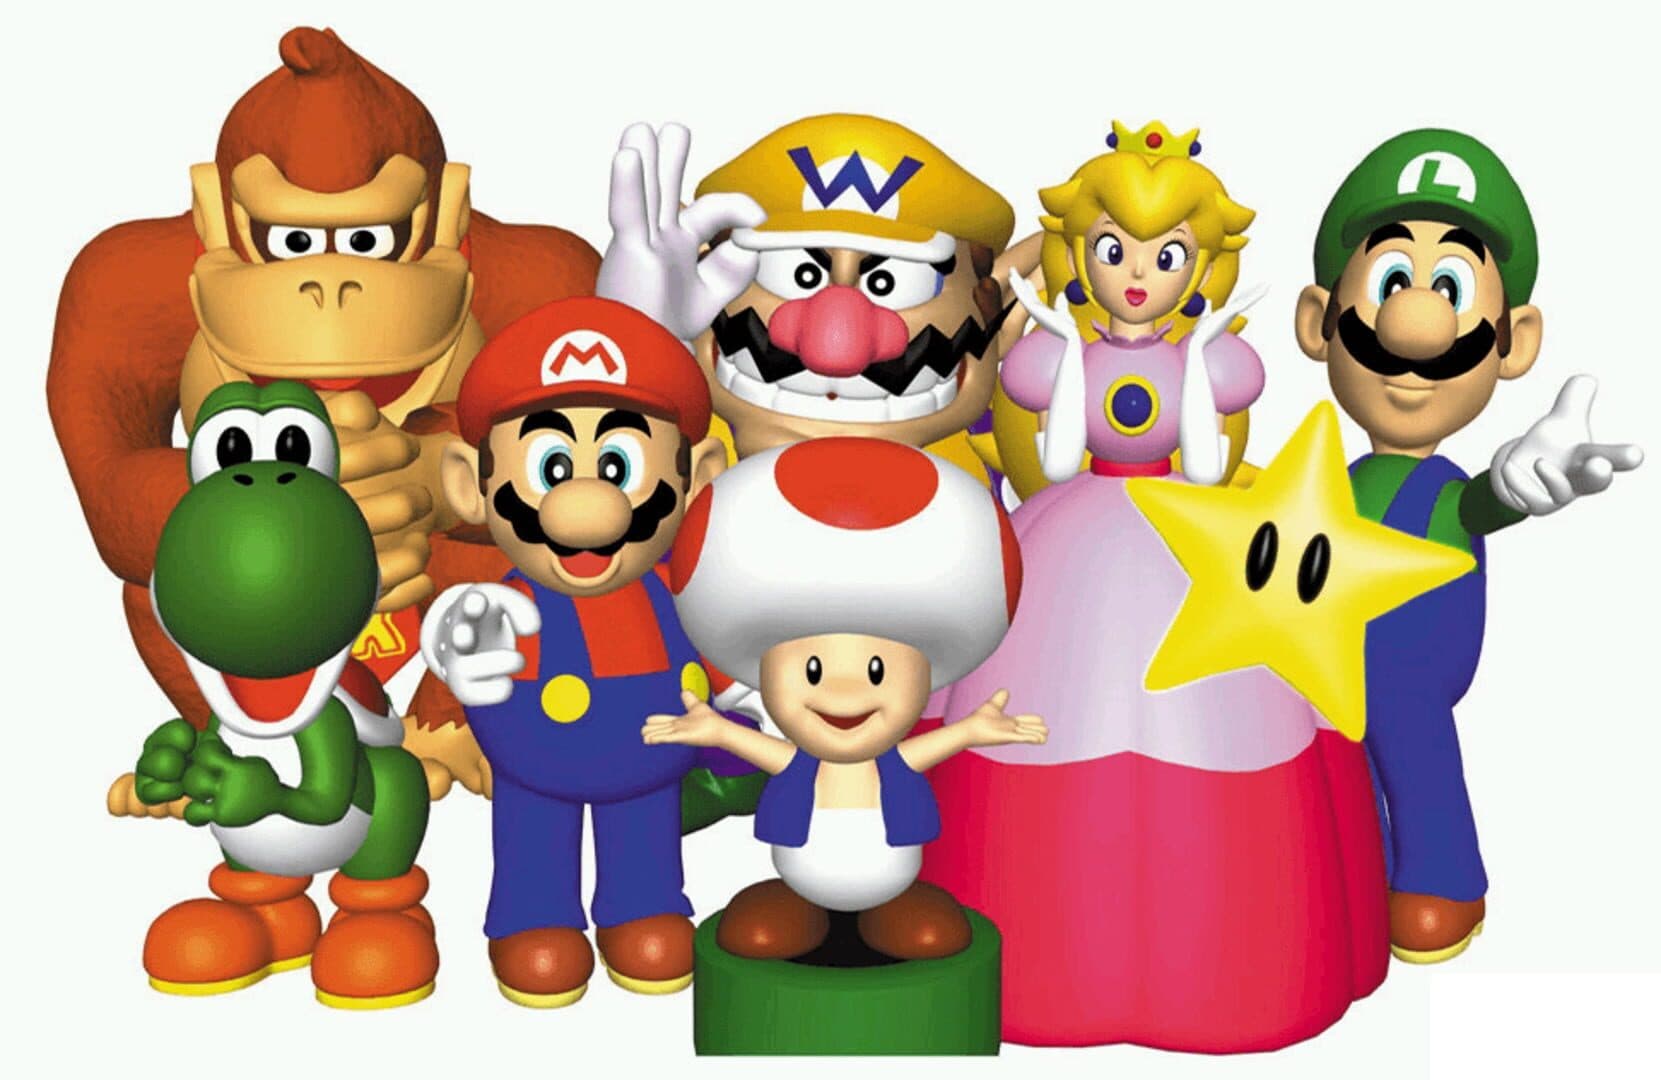 Mario Party Image